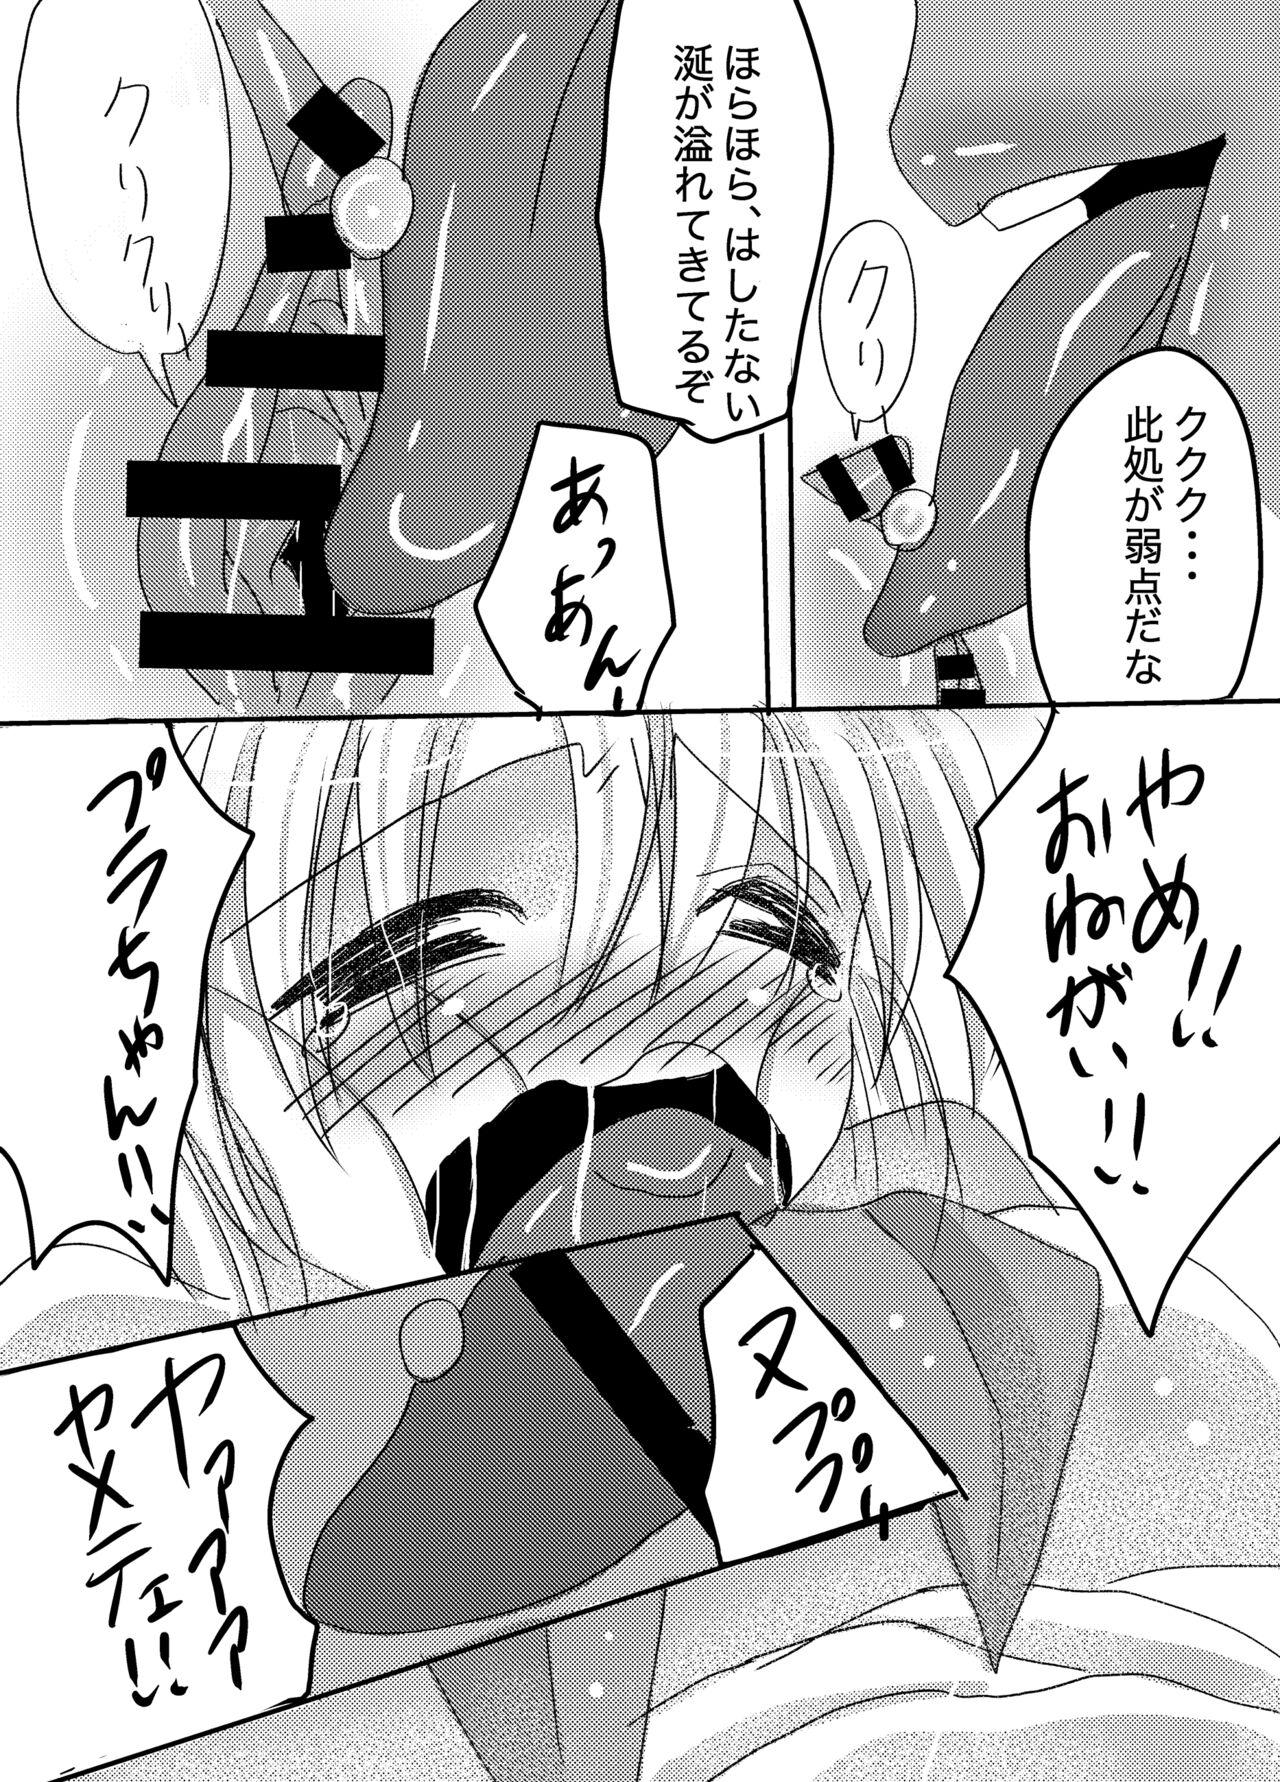 European Galtinum ni Omanko Peropero Sarechau Shiro-chan no Manga - Bomber girl Orgasmus - Page 5